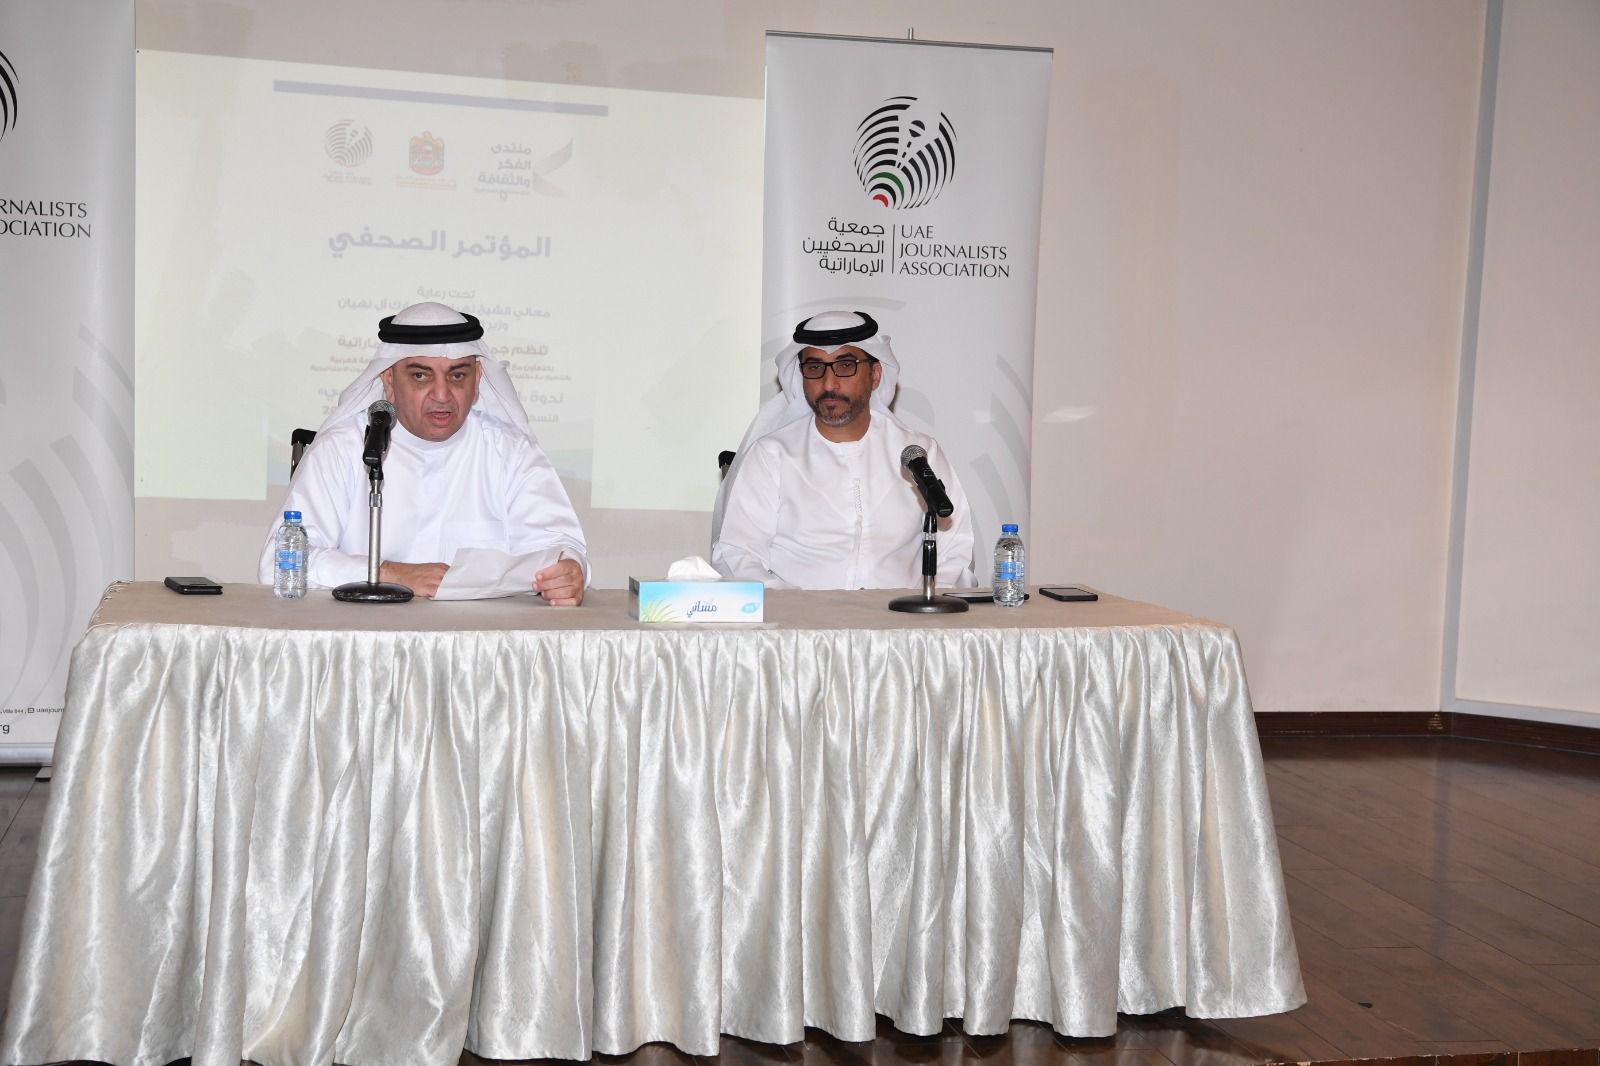 جمعية الصحفيين تنظم منتدى الفكر والثقافة العربية تحت شعار "التسامح والتعايش السلمي" 9 مارس